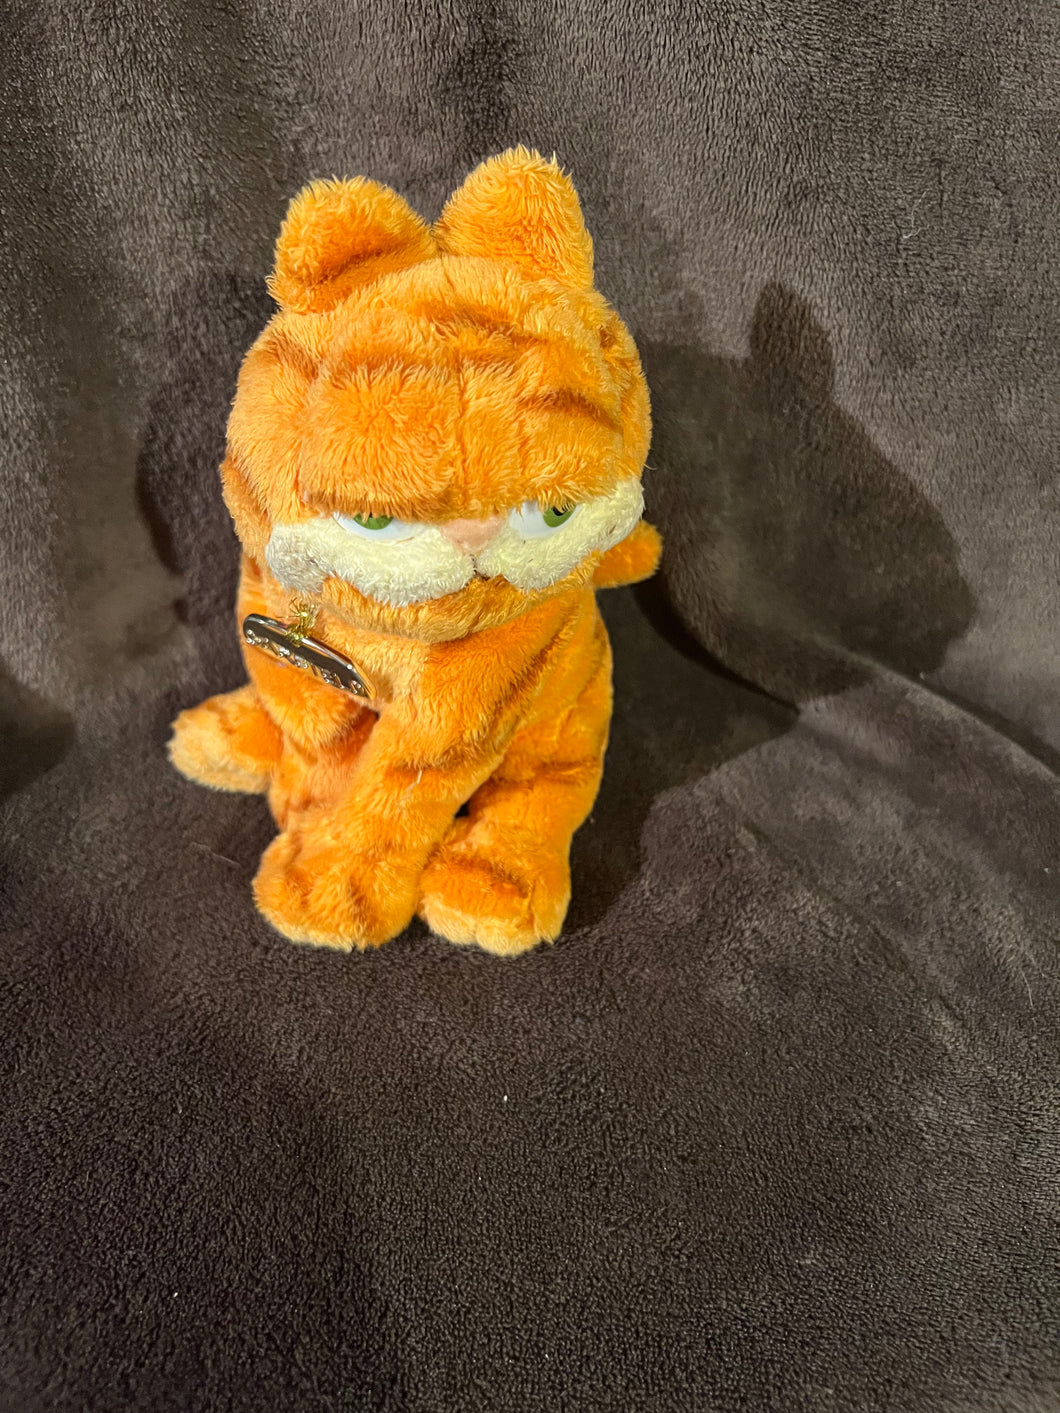 Garfield The Cat Ty Beanie Baby Soft Plush